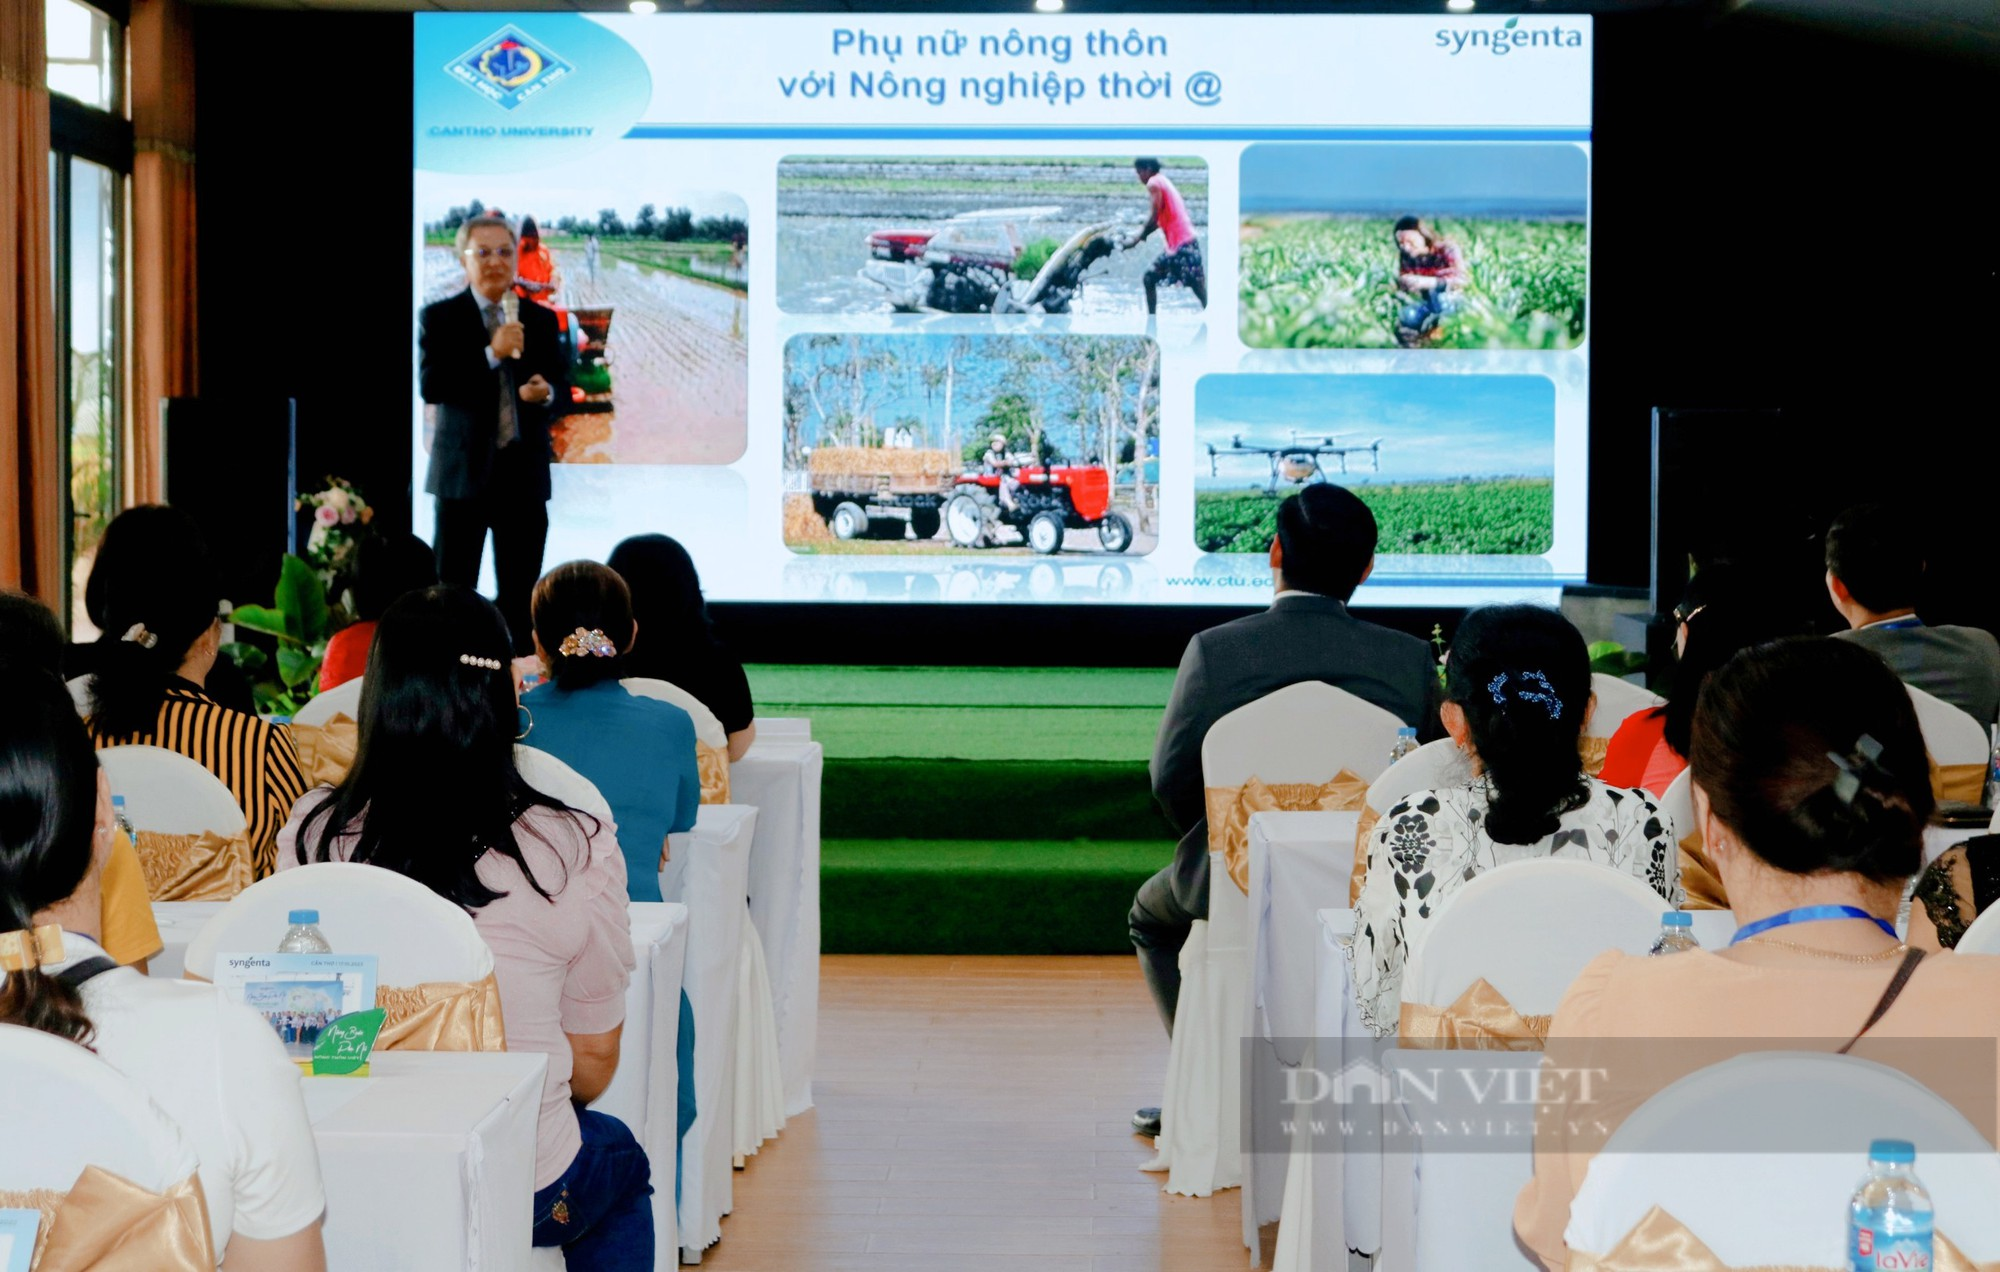 Syngenta đồng hành và nâng bước phụ nữ nông thôn Việt - Ảnh 3.